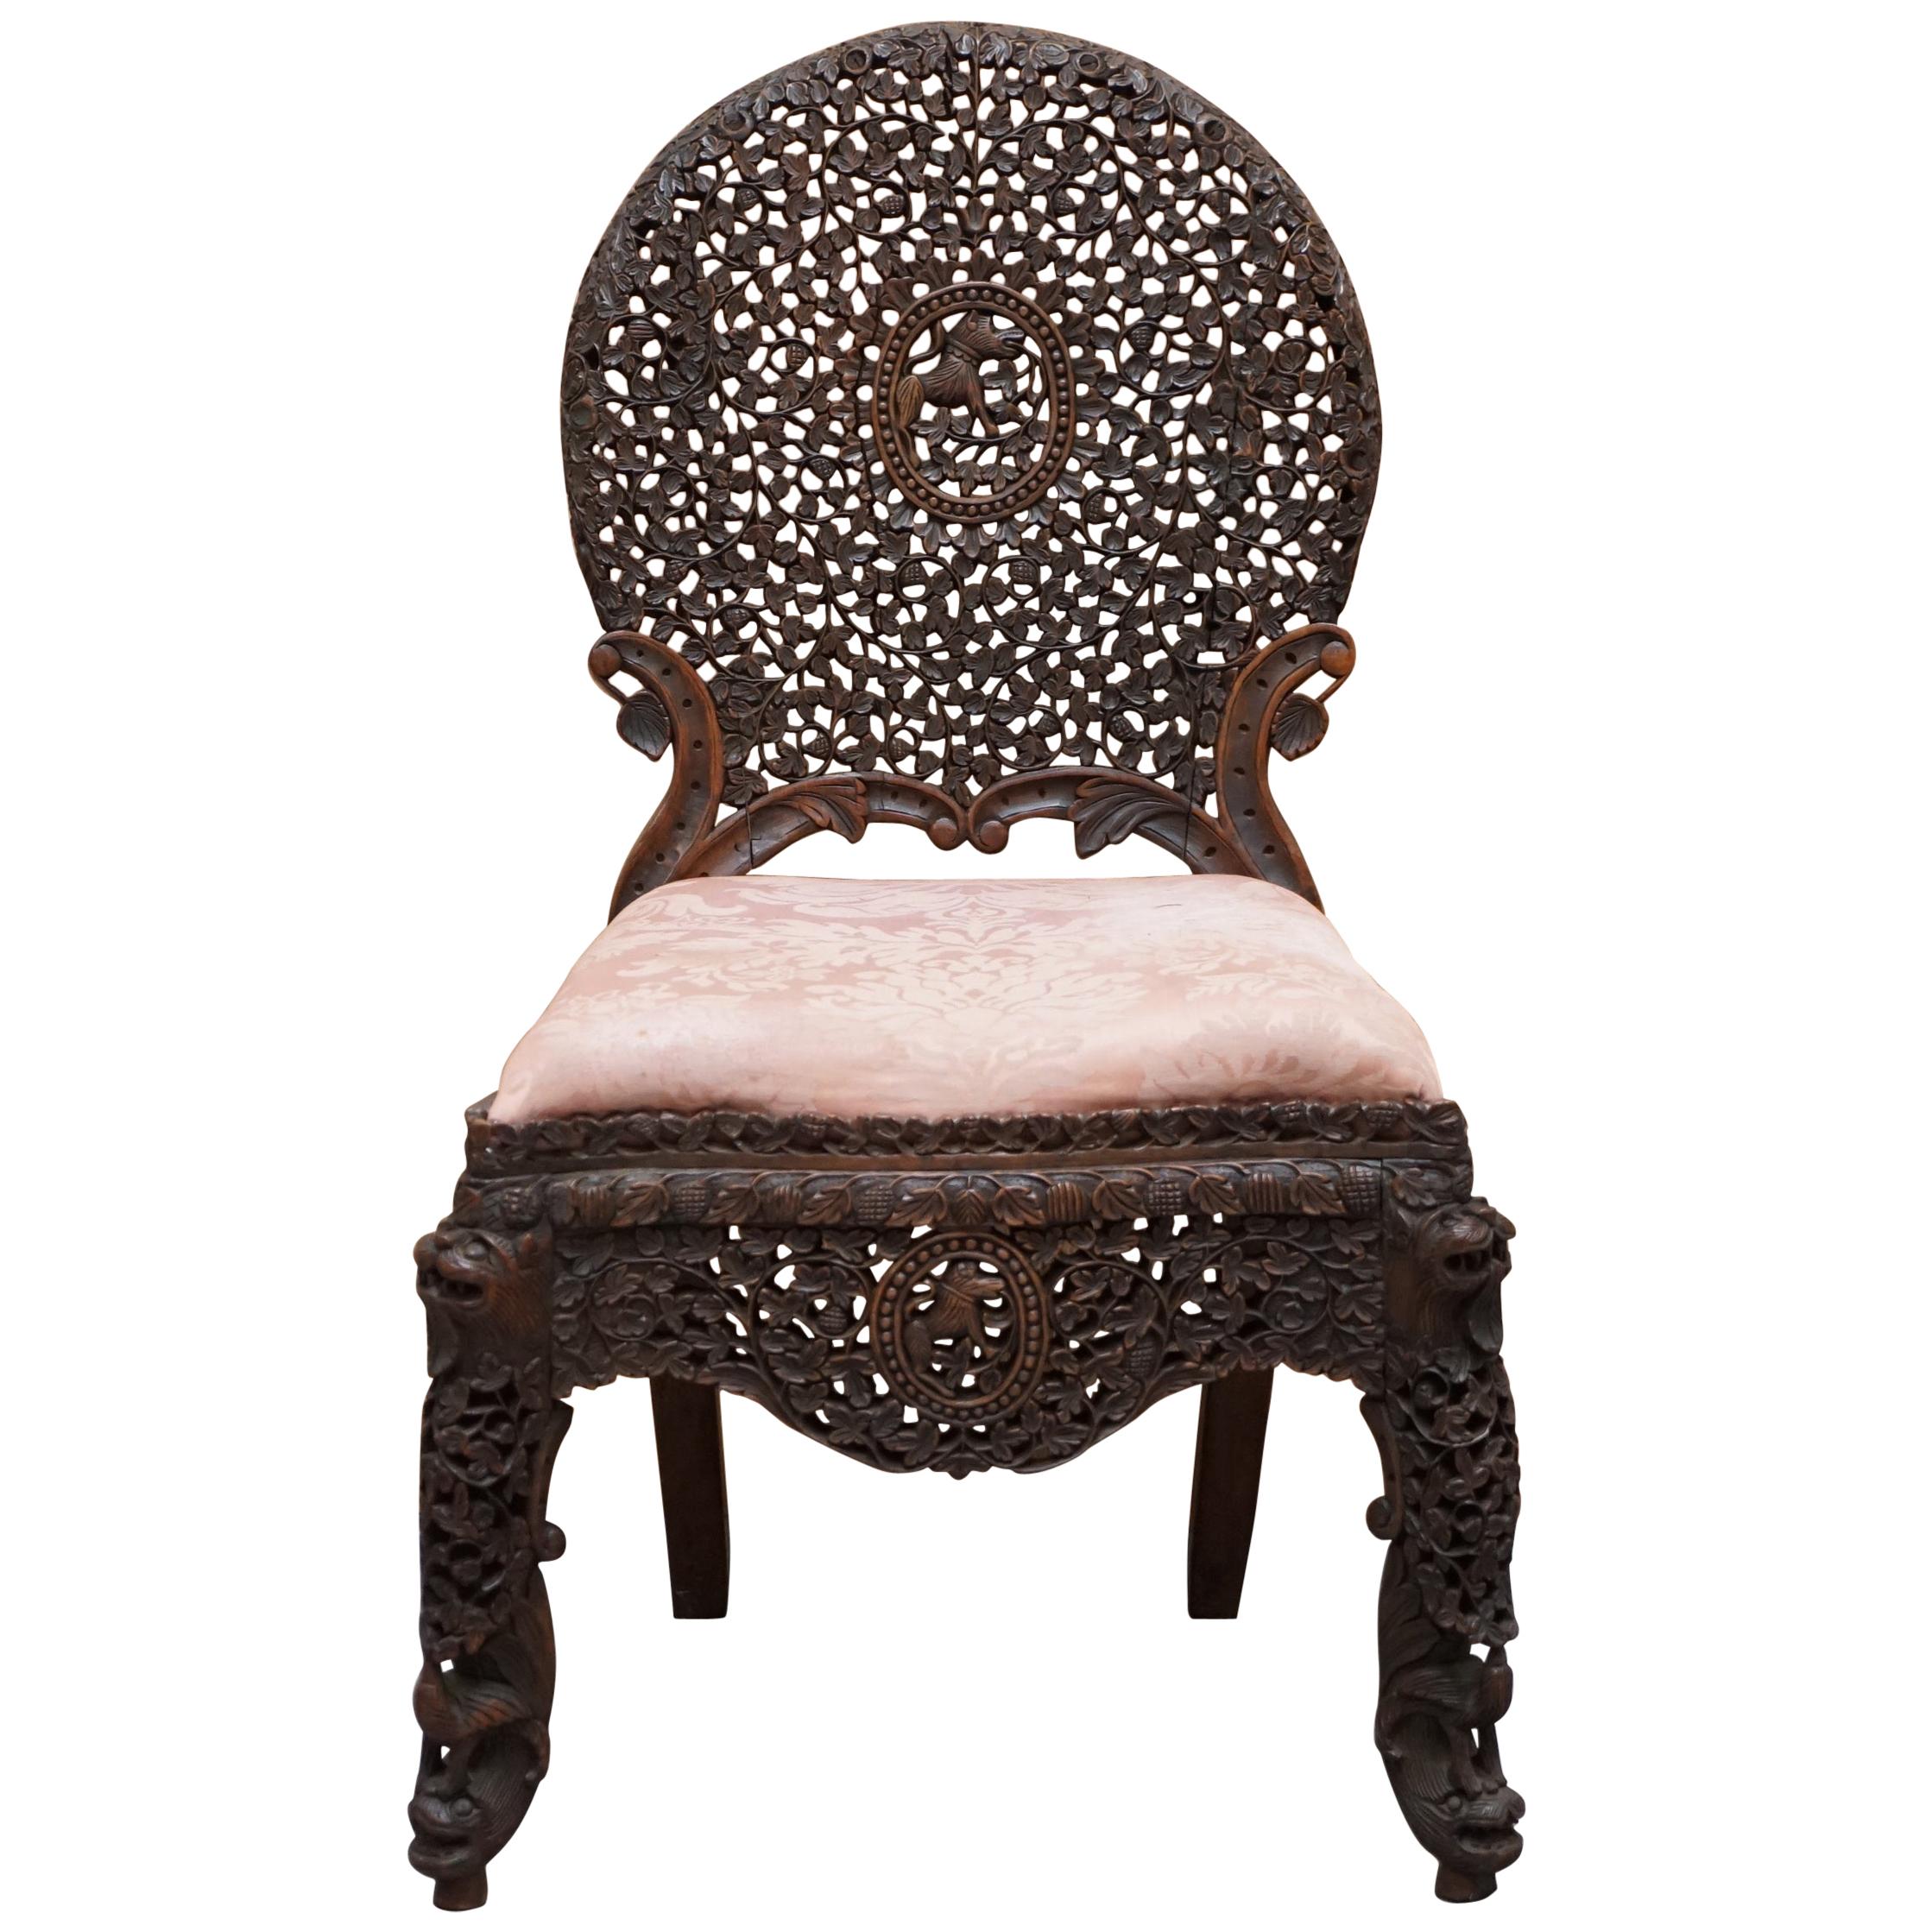 Chaise anglo-indienne birmane en bois dur:: sculptée à la main et ornée de motifs floraux sur toute sa surface